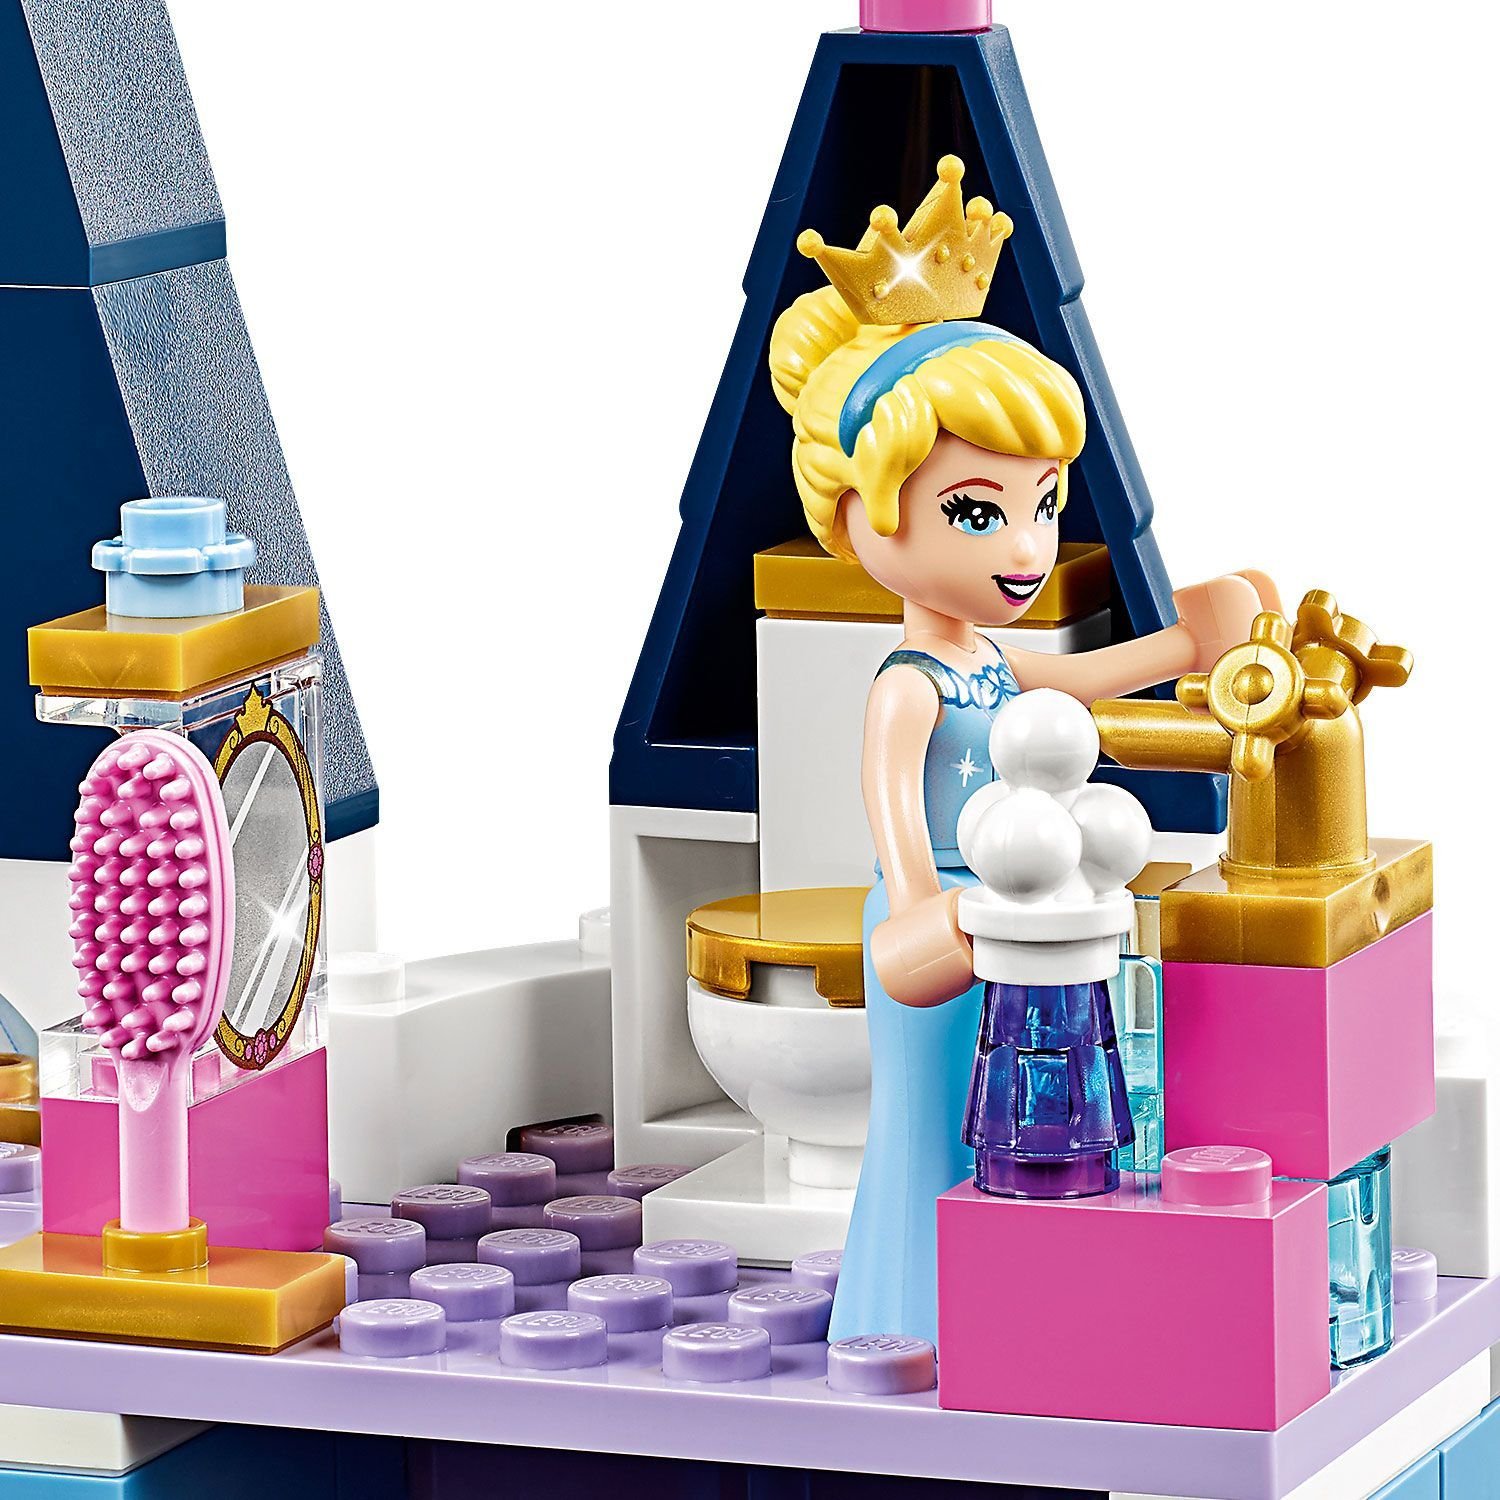 Lego Disney Princess 43178 Праздник в замке Золушки